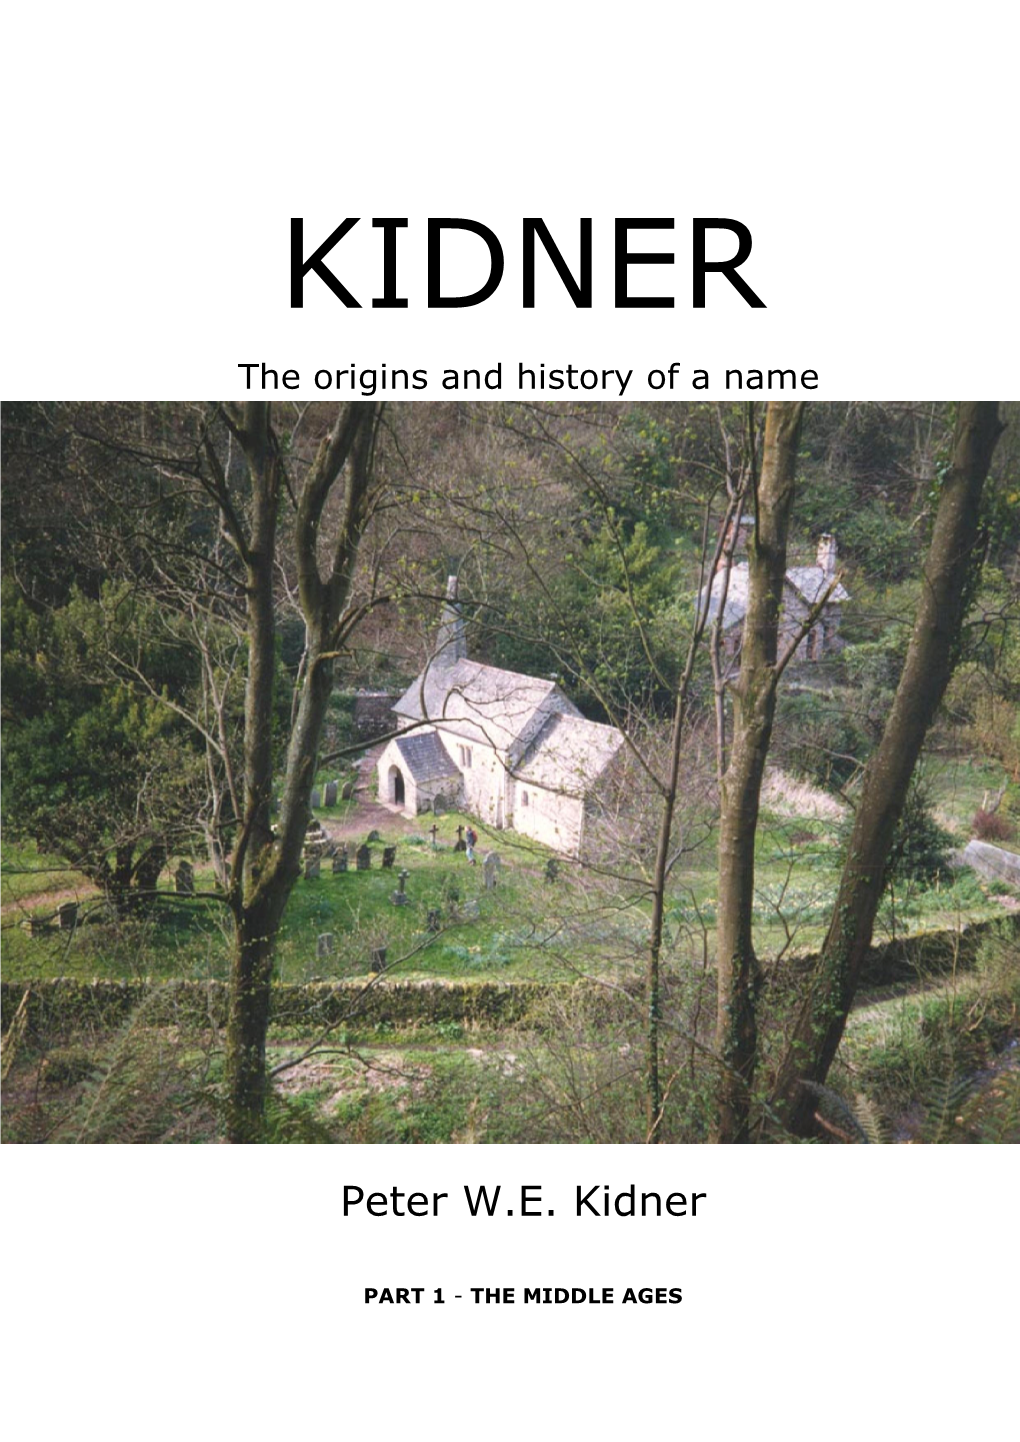 Peter W.E. Kidner